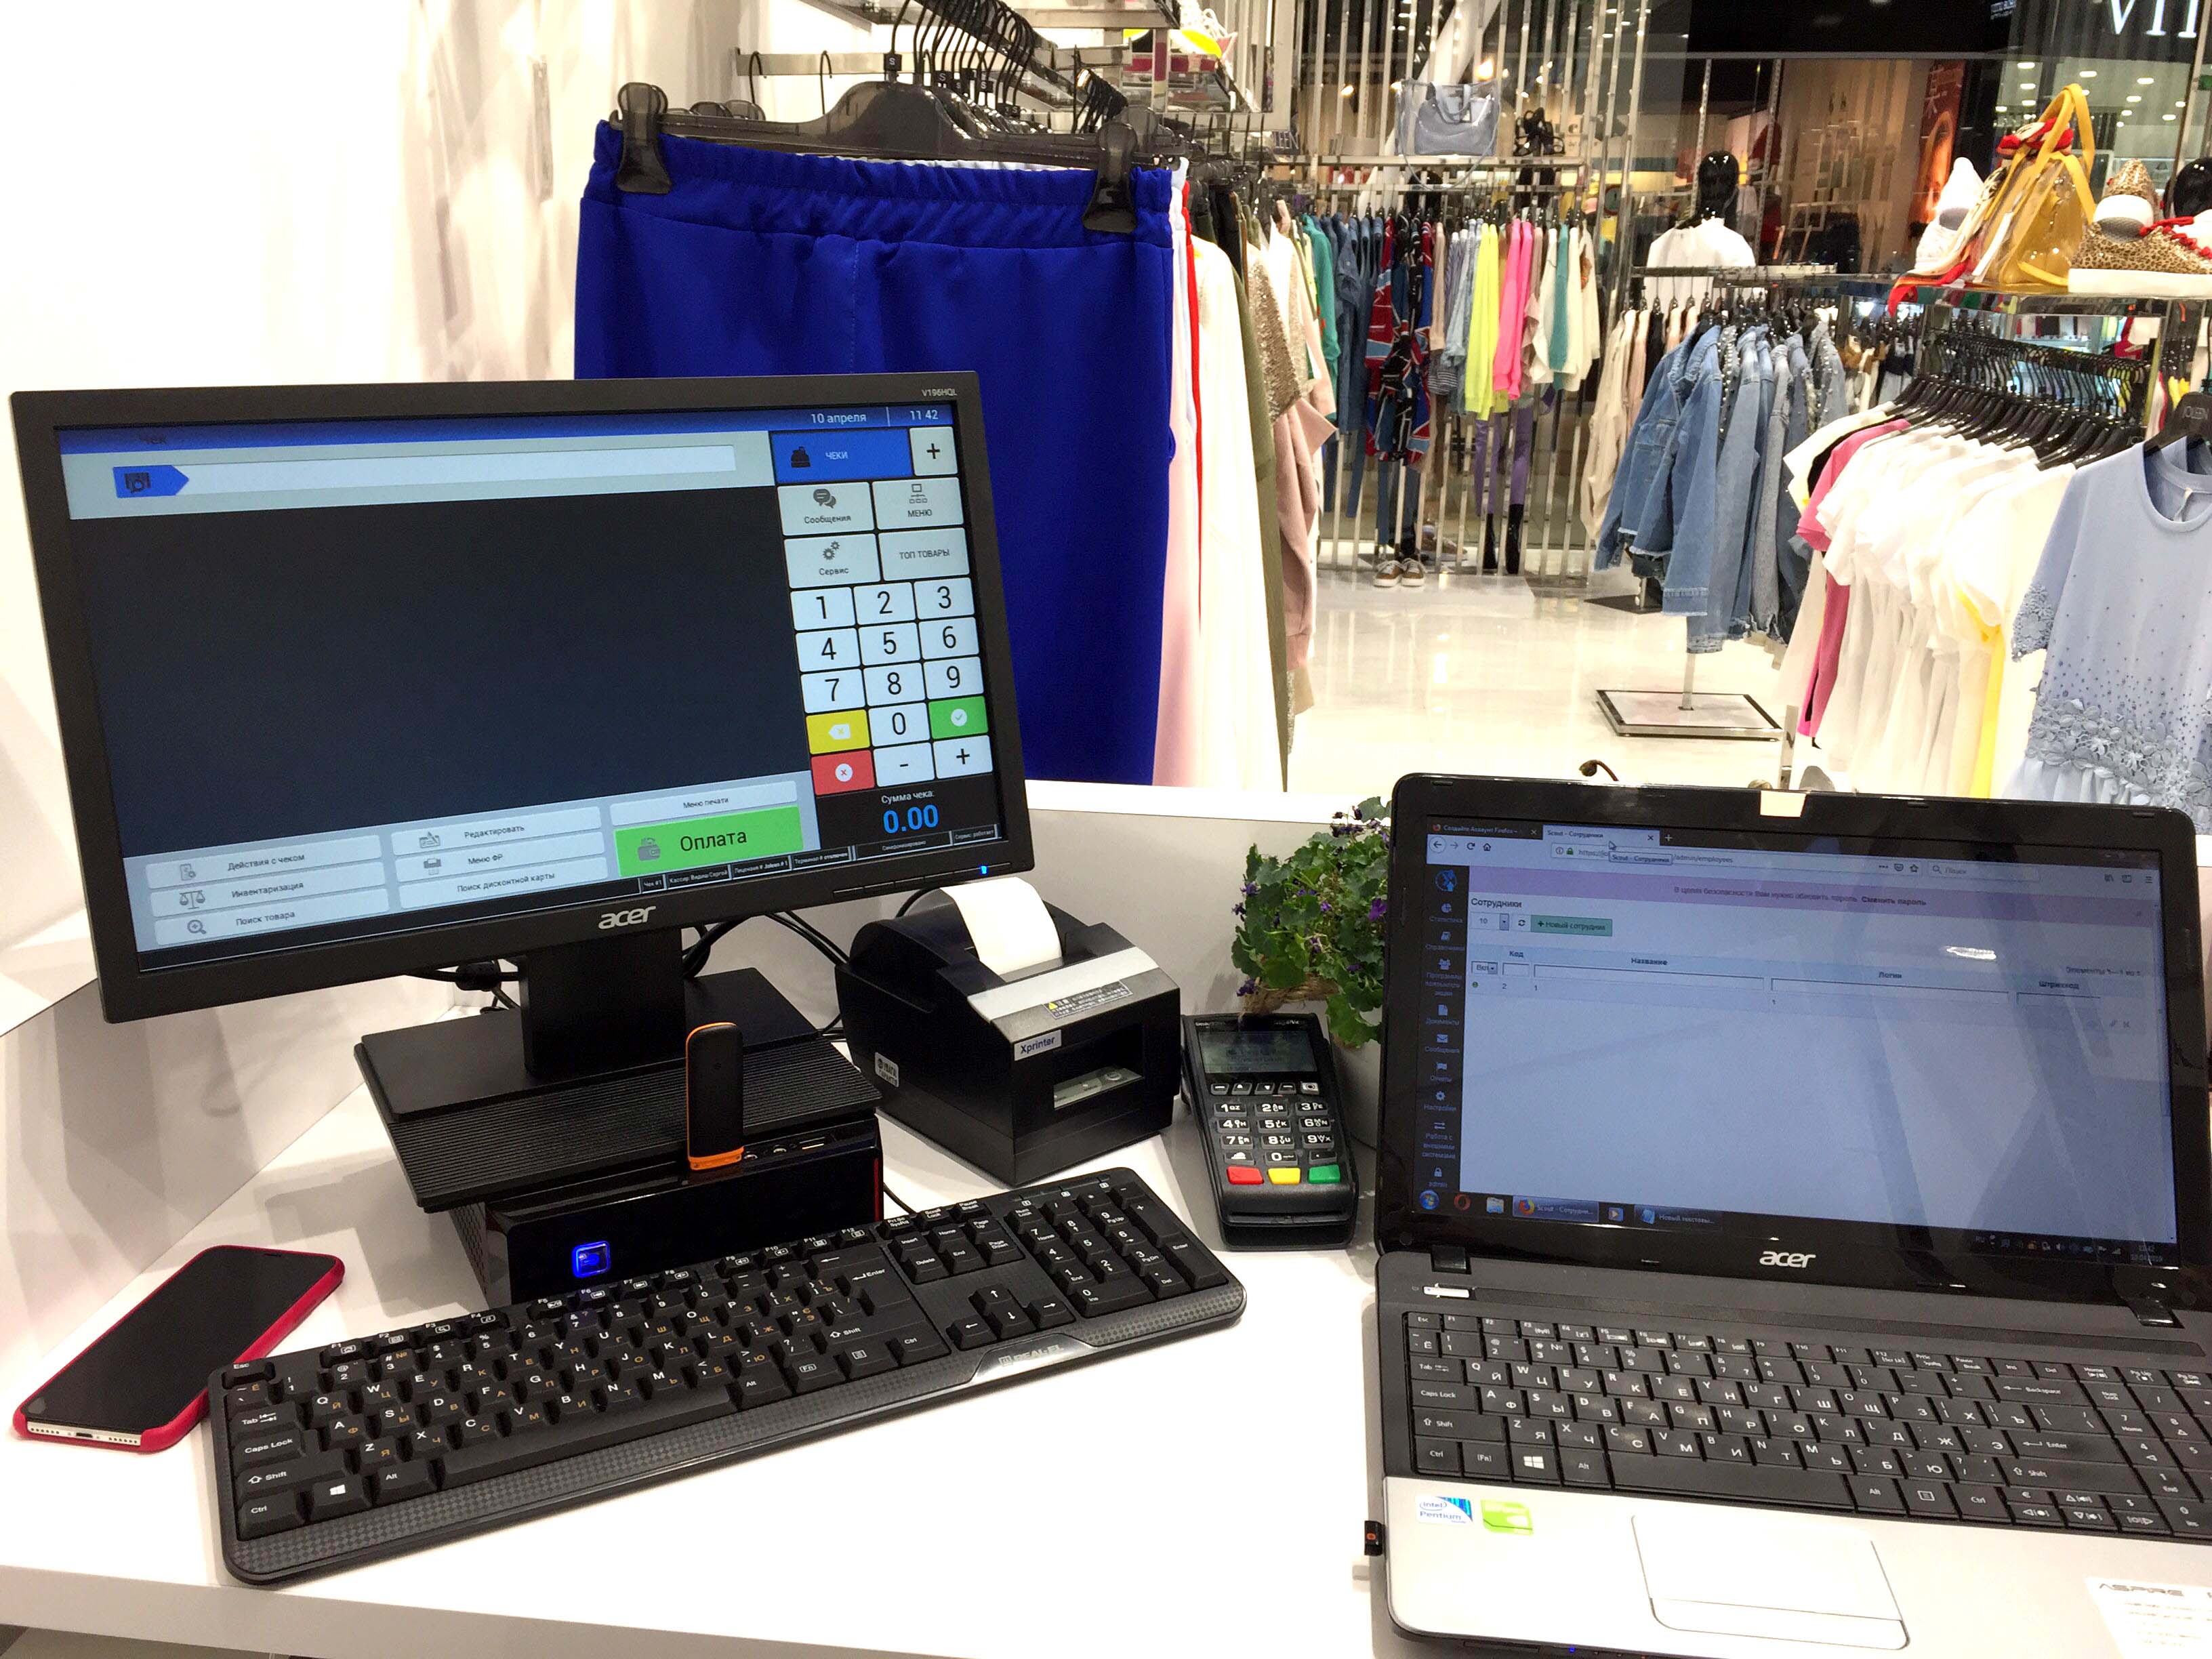 Так выглядит рабочее место продавца магазина одежды, автоматизированное с помощью POS-системы Chameleon POS.